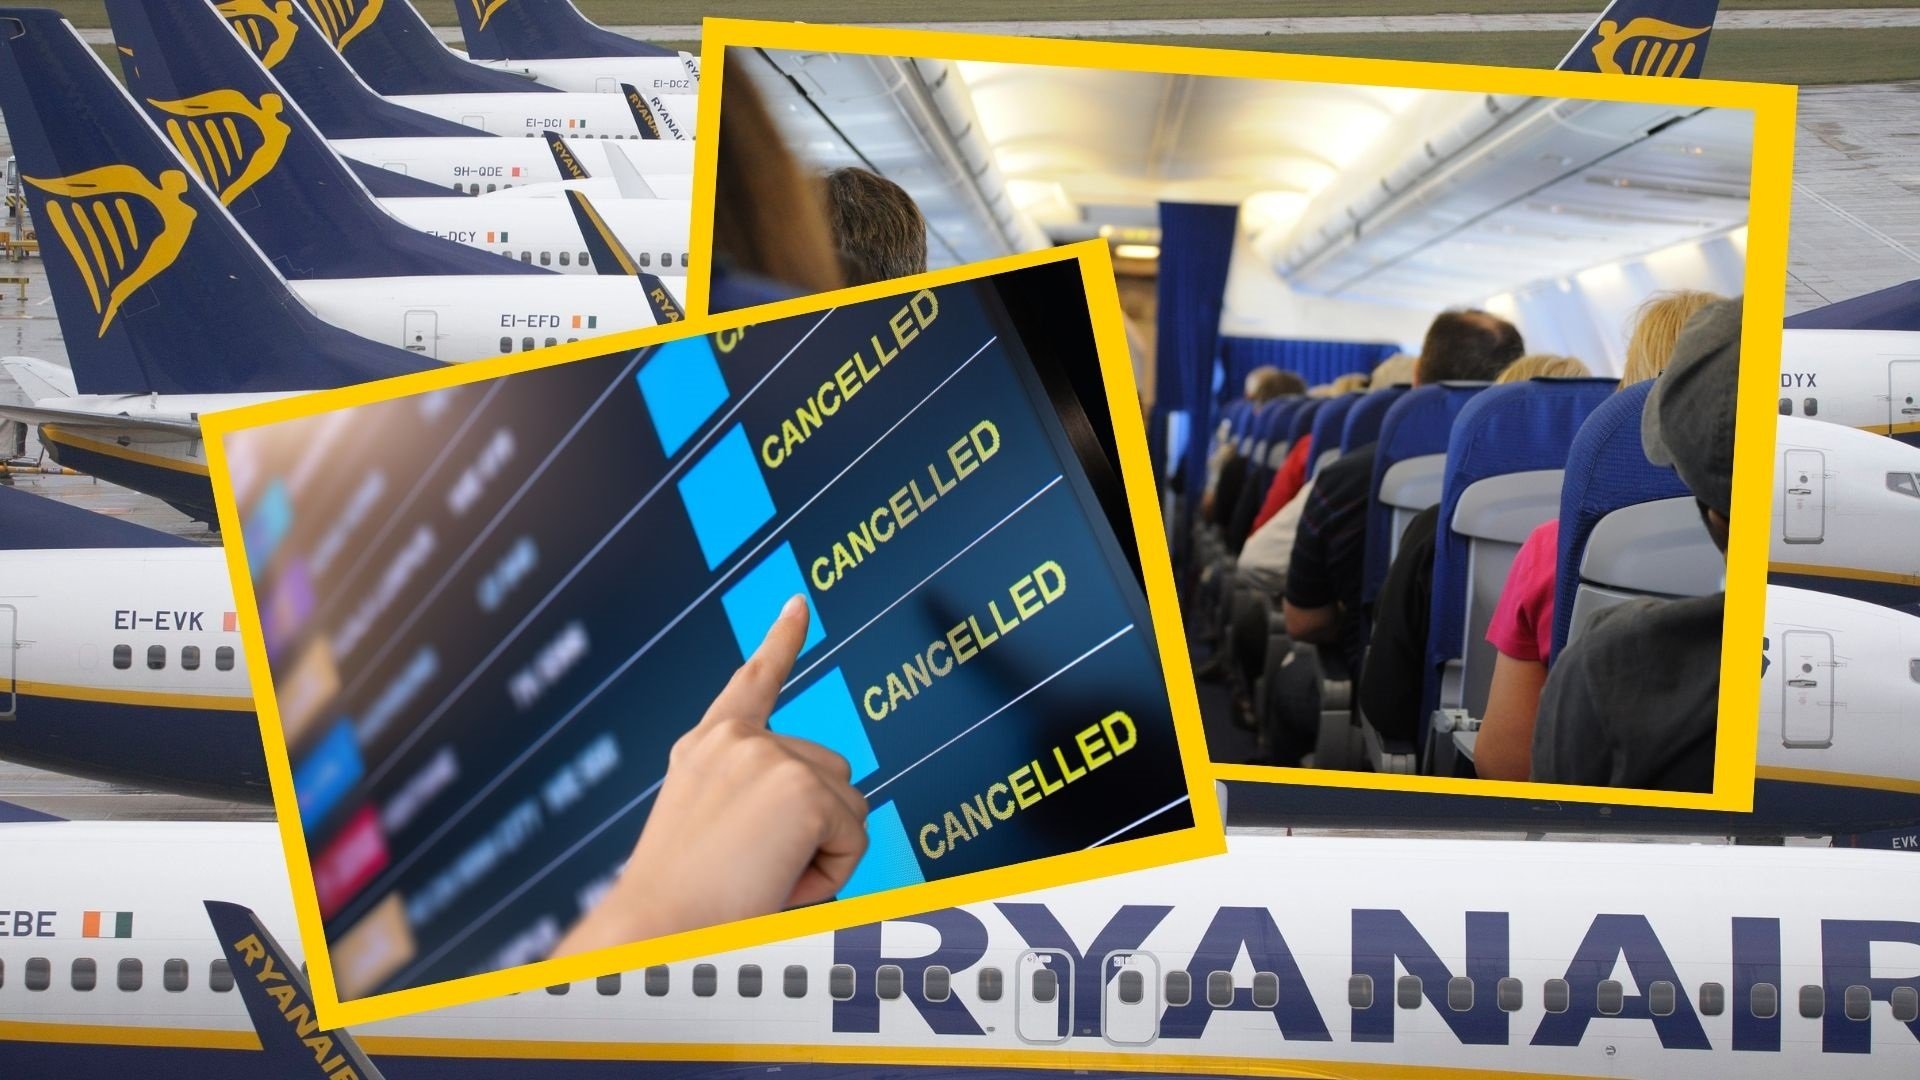 Vaga de Ryanair al juliol 2022: vols cancel·lats i què pots fer si estàs afectat